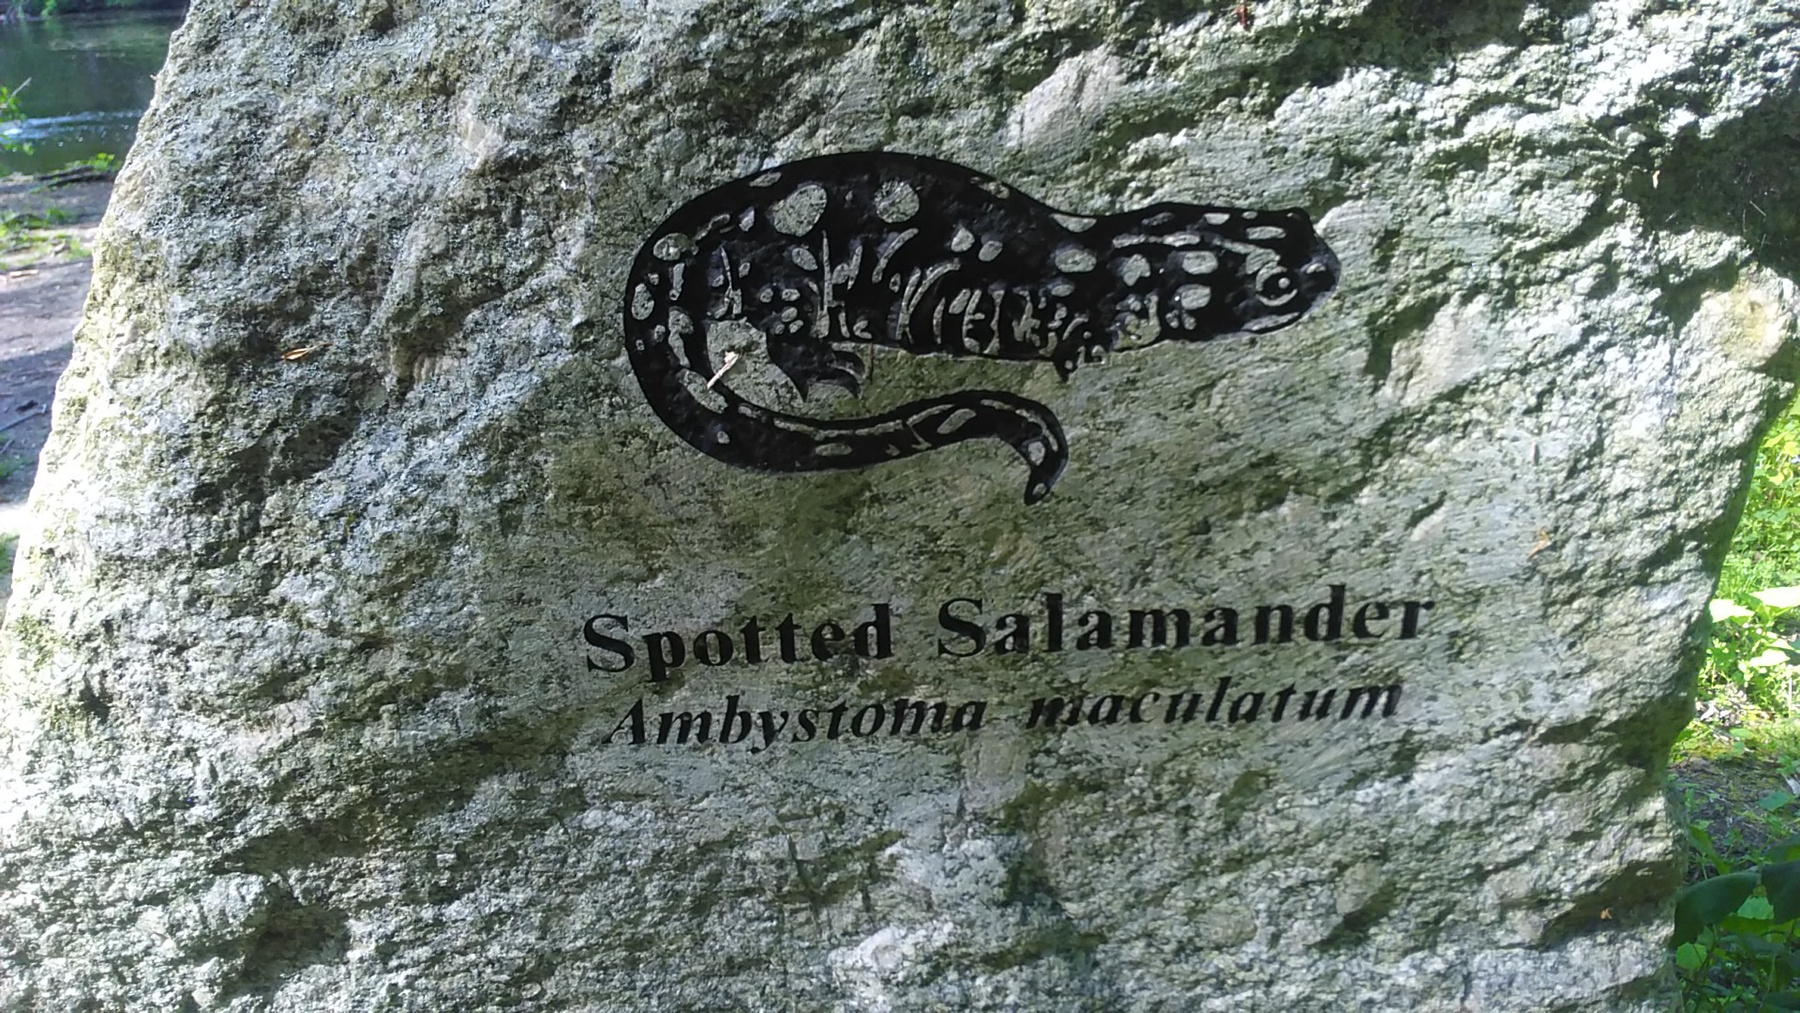 Spotted salmander salamander